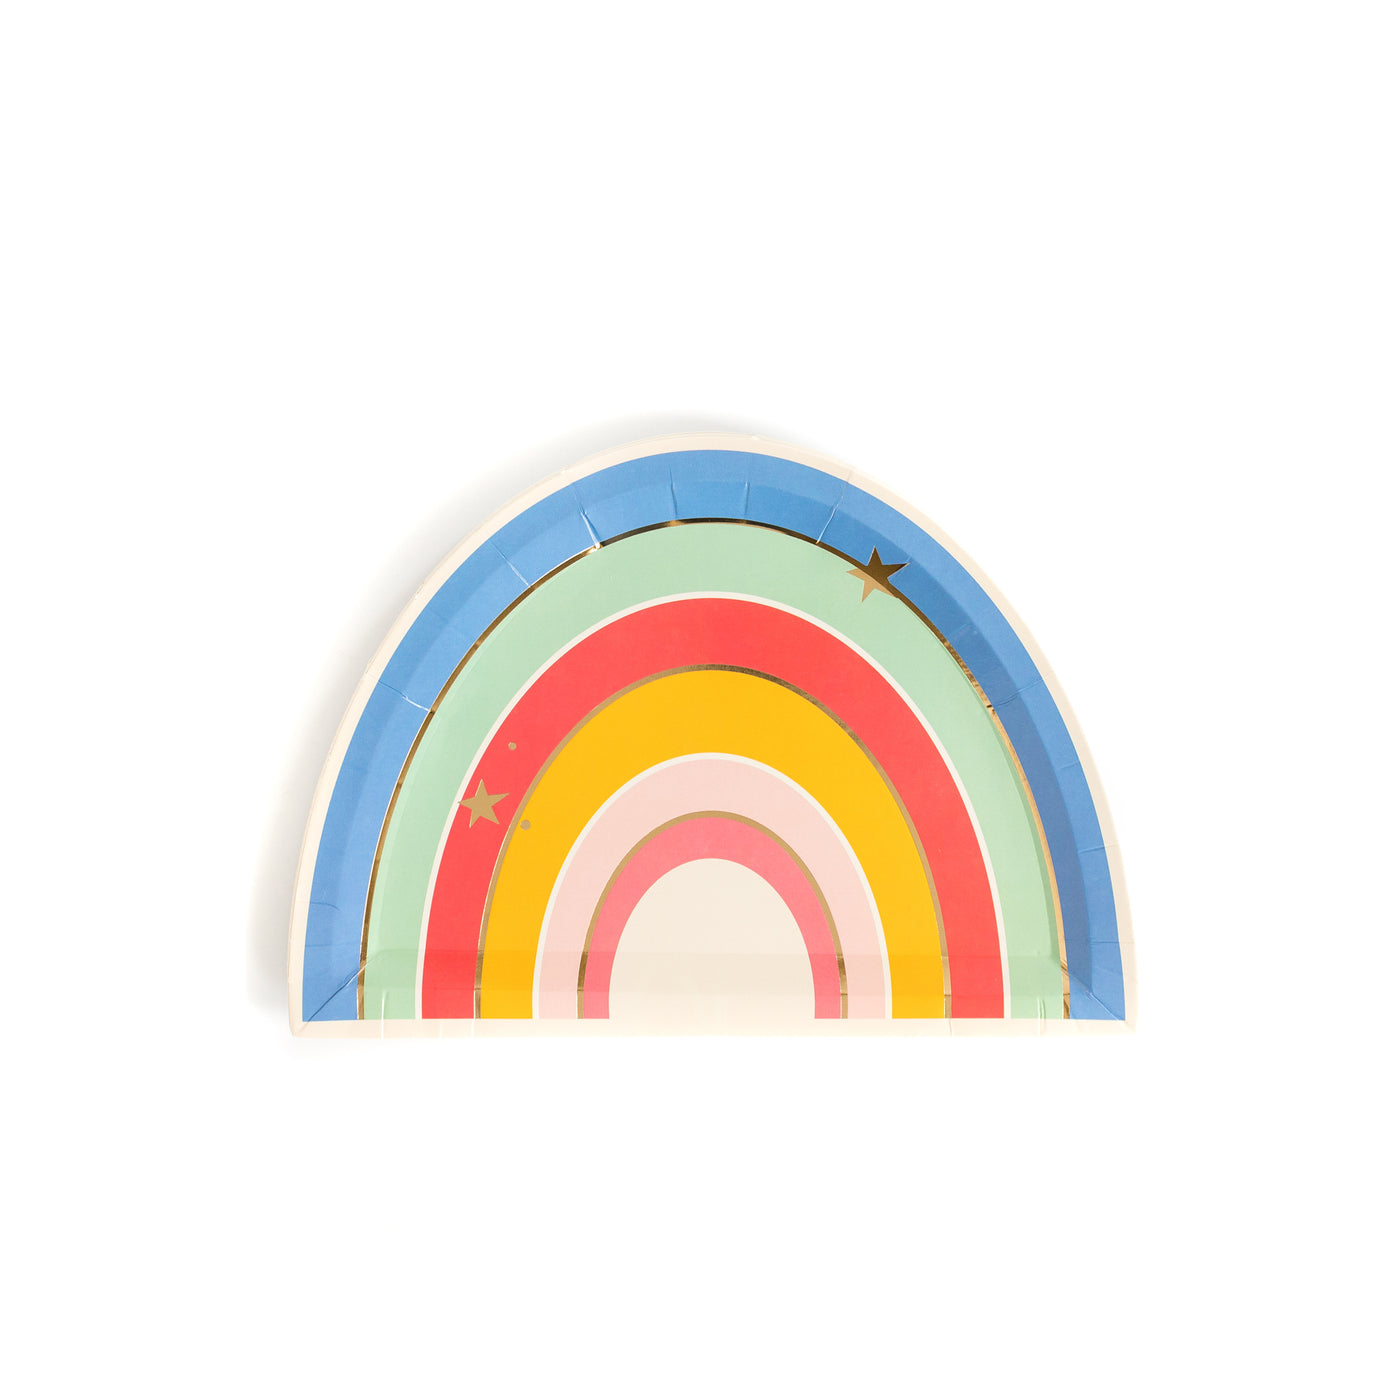 MAG740 - Magical Rainbow 9" Plates